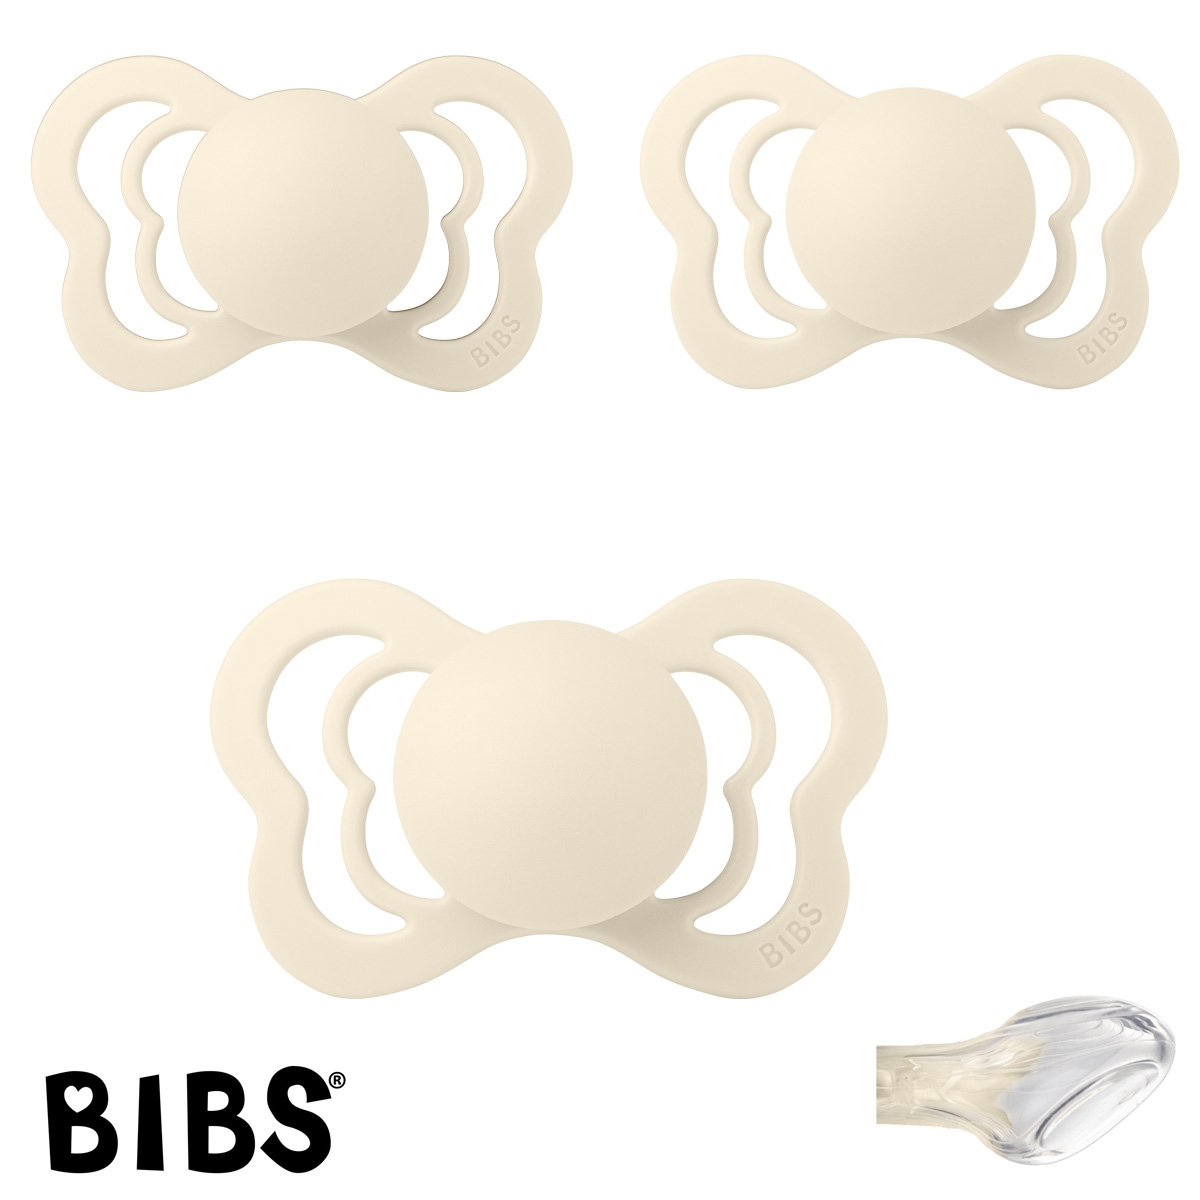 BIBS Couture Sutter med navn str2, Ivory, Anatomisk Silikone, Pakke med 3 sutter